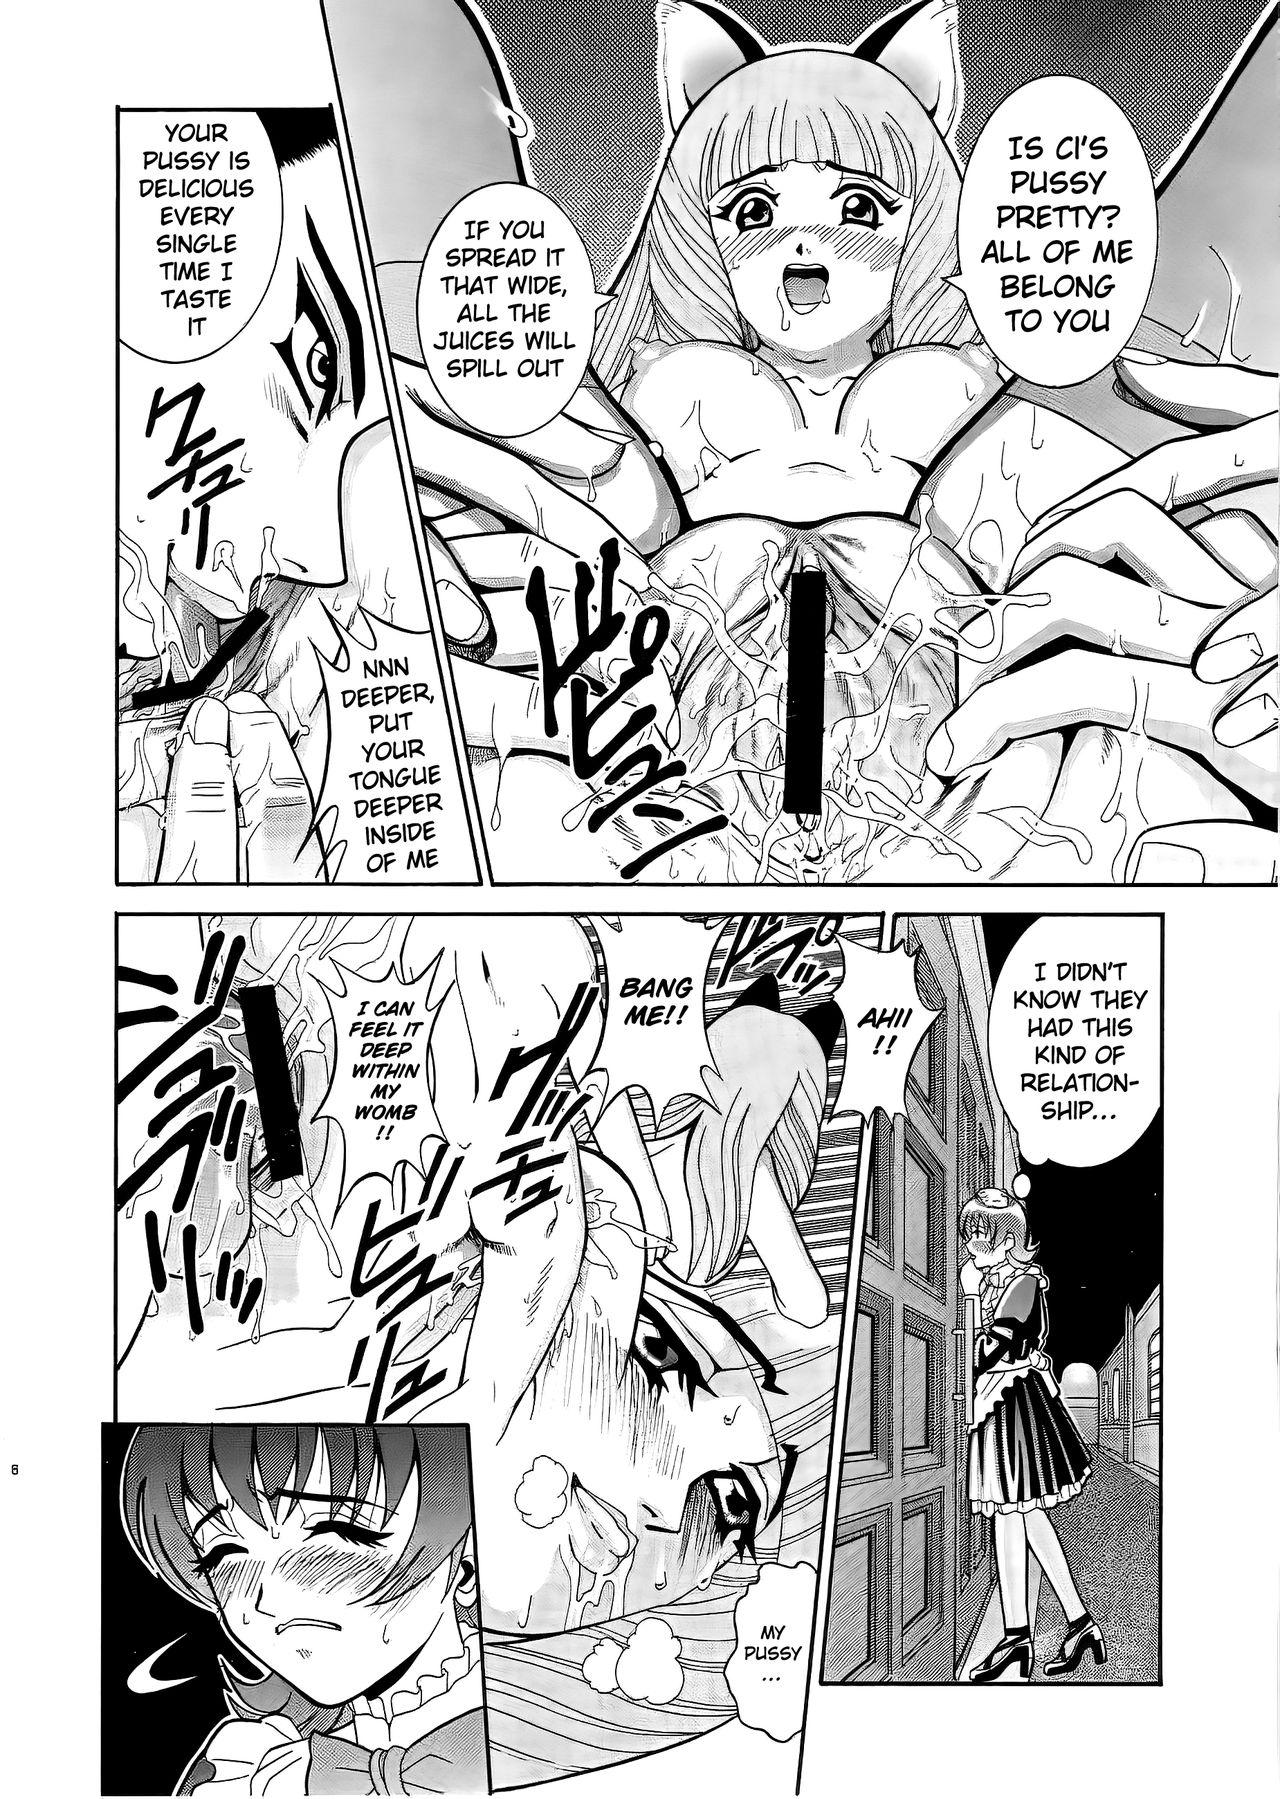 Wet ANGEL PAIN 6 - Sakura taisen | sakura wars Sola - Page 7